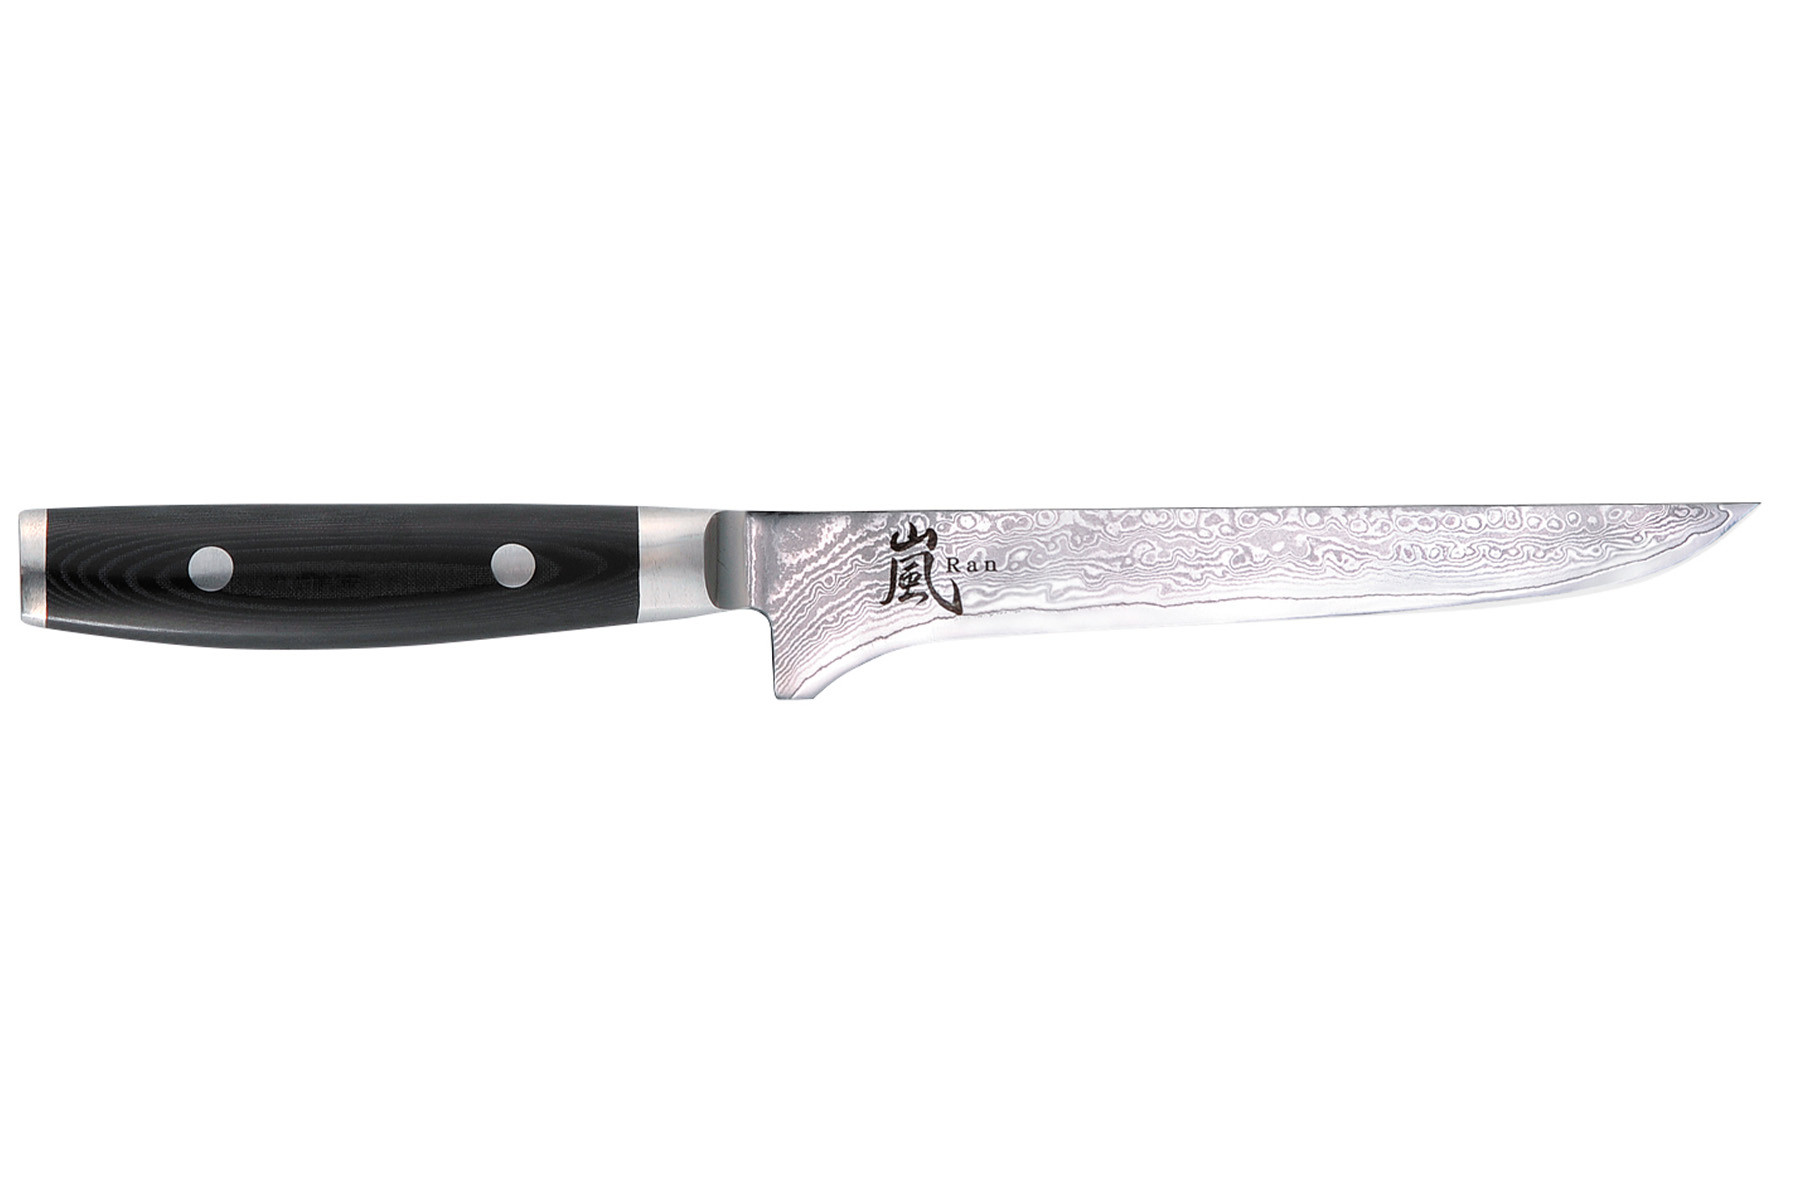 Couteau japonais Yaxell "Ran" - Couteau désosseur 15 cm